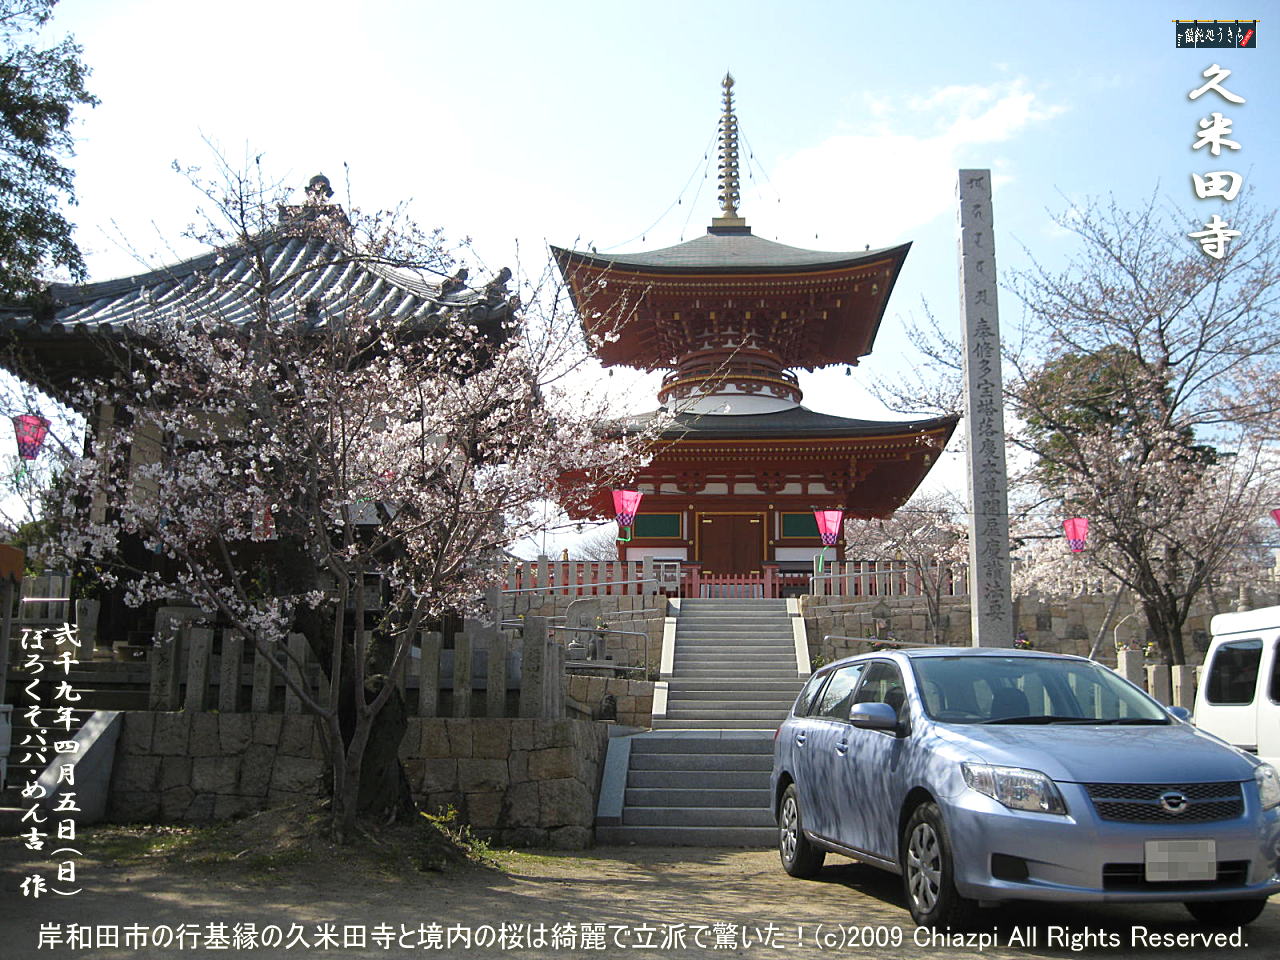 4／5（日）【久米田寺】岸和田市の行基縁の久米田寺と境内の桜は綺麗で立派で驚いた！＠キャツピ＆めん吉の【ぼろくそパパの独り言】
　　　　▼クリックで1280x960pxlsに拡大します。